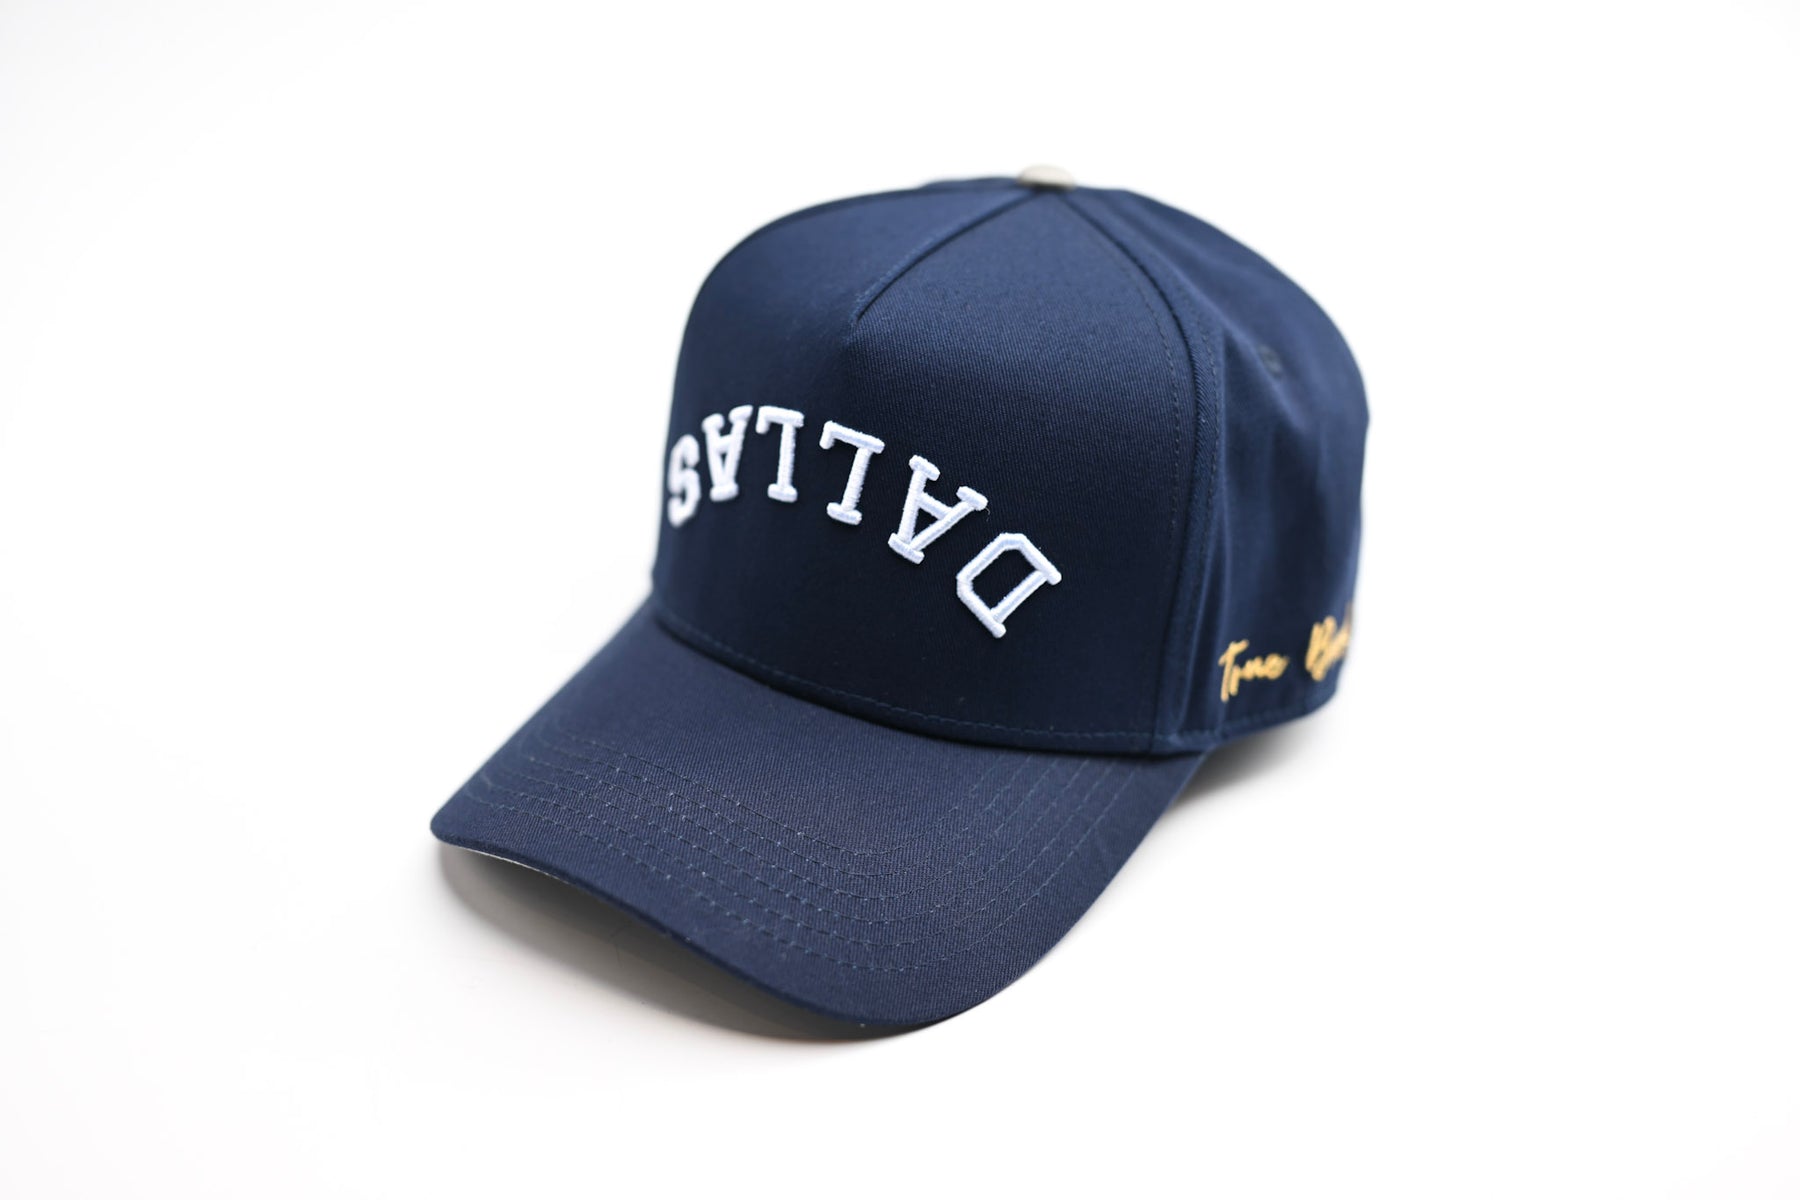 True Brand / True Brvnd Hat / Woven Snapback / Dallas Street Wear IN HAND  ✓✓